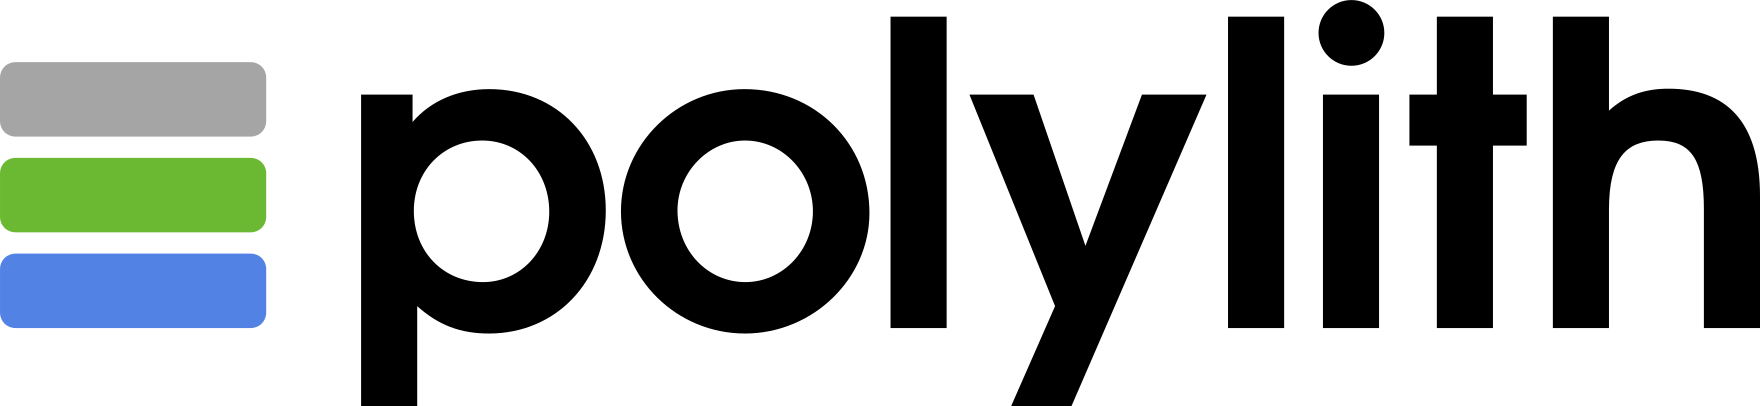 Polylith logo